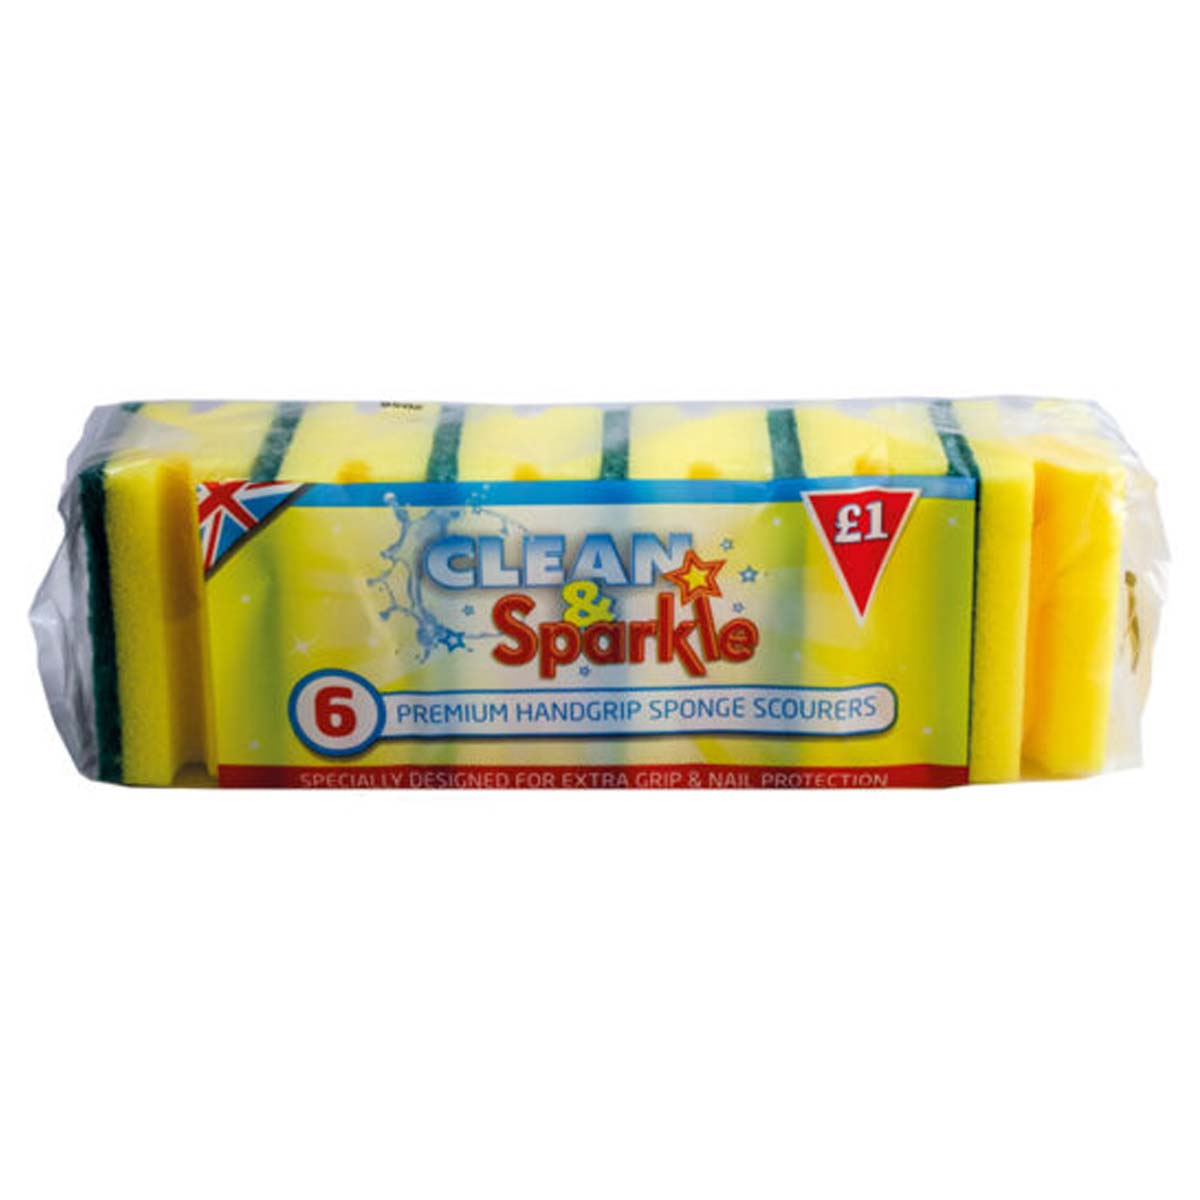 Clean & Sparkle - Handgrip Sponge Scourers - 6pcs - Continental Food Store